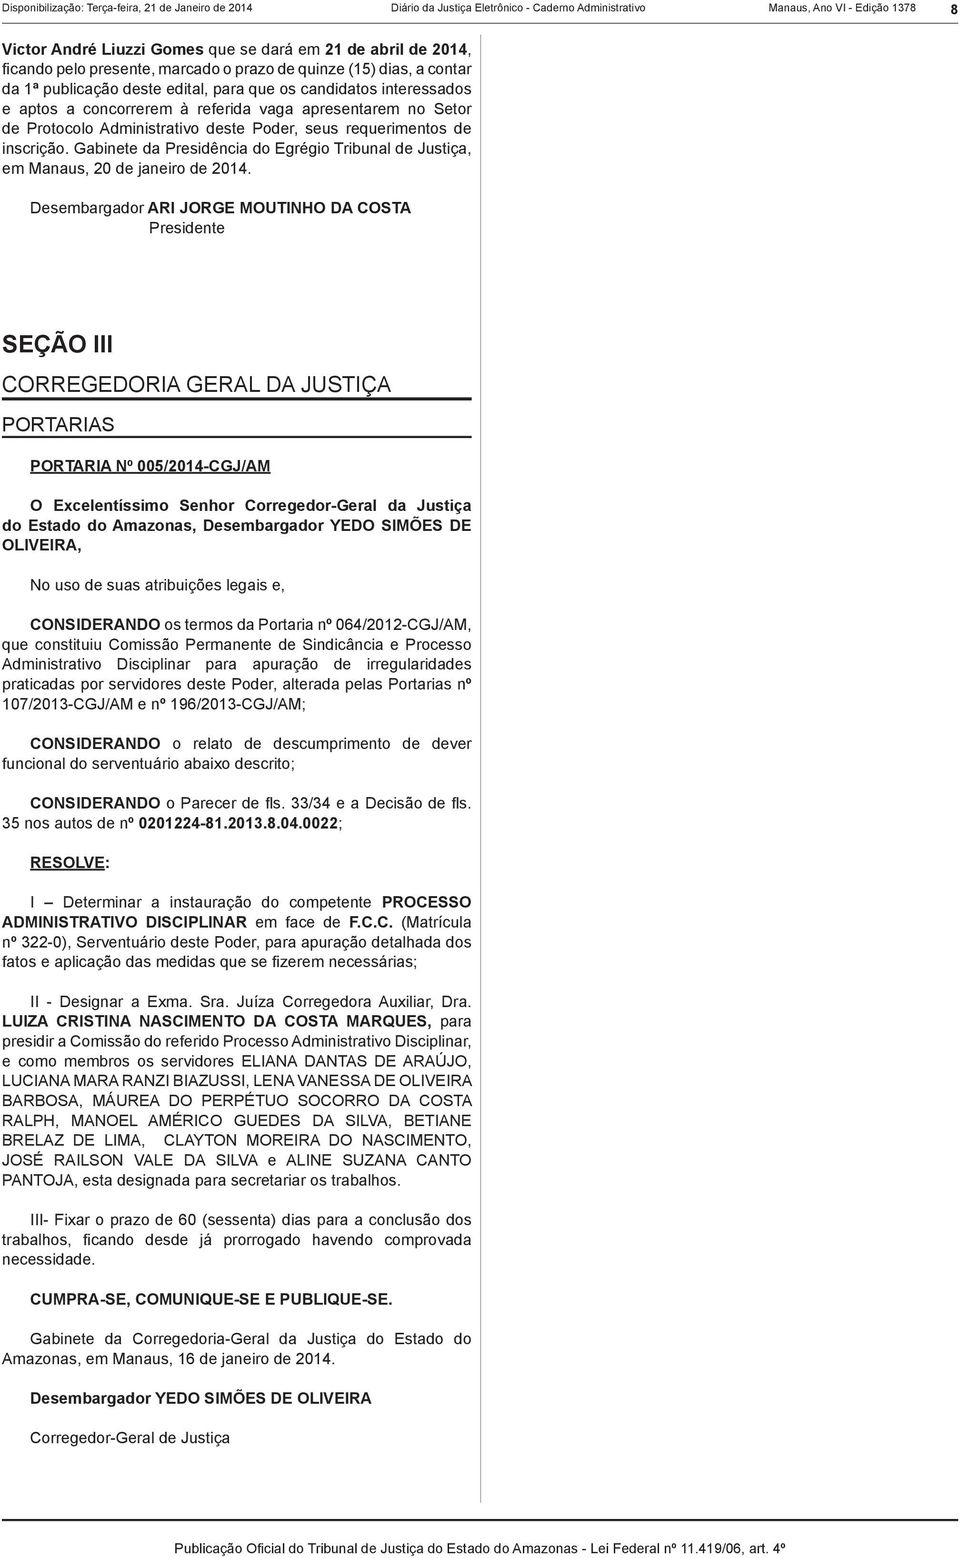 Protocolo Administrativo deste Poder, seus requerimentos de inscrição. Gabinete da Presidência do Egrégio Tribunal de Justiça, em Manaus, 20 de janeiro de 2014.